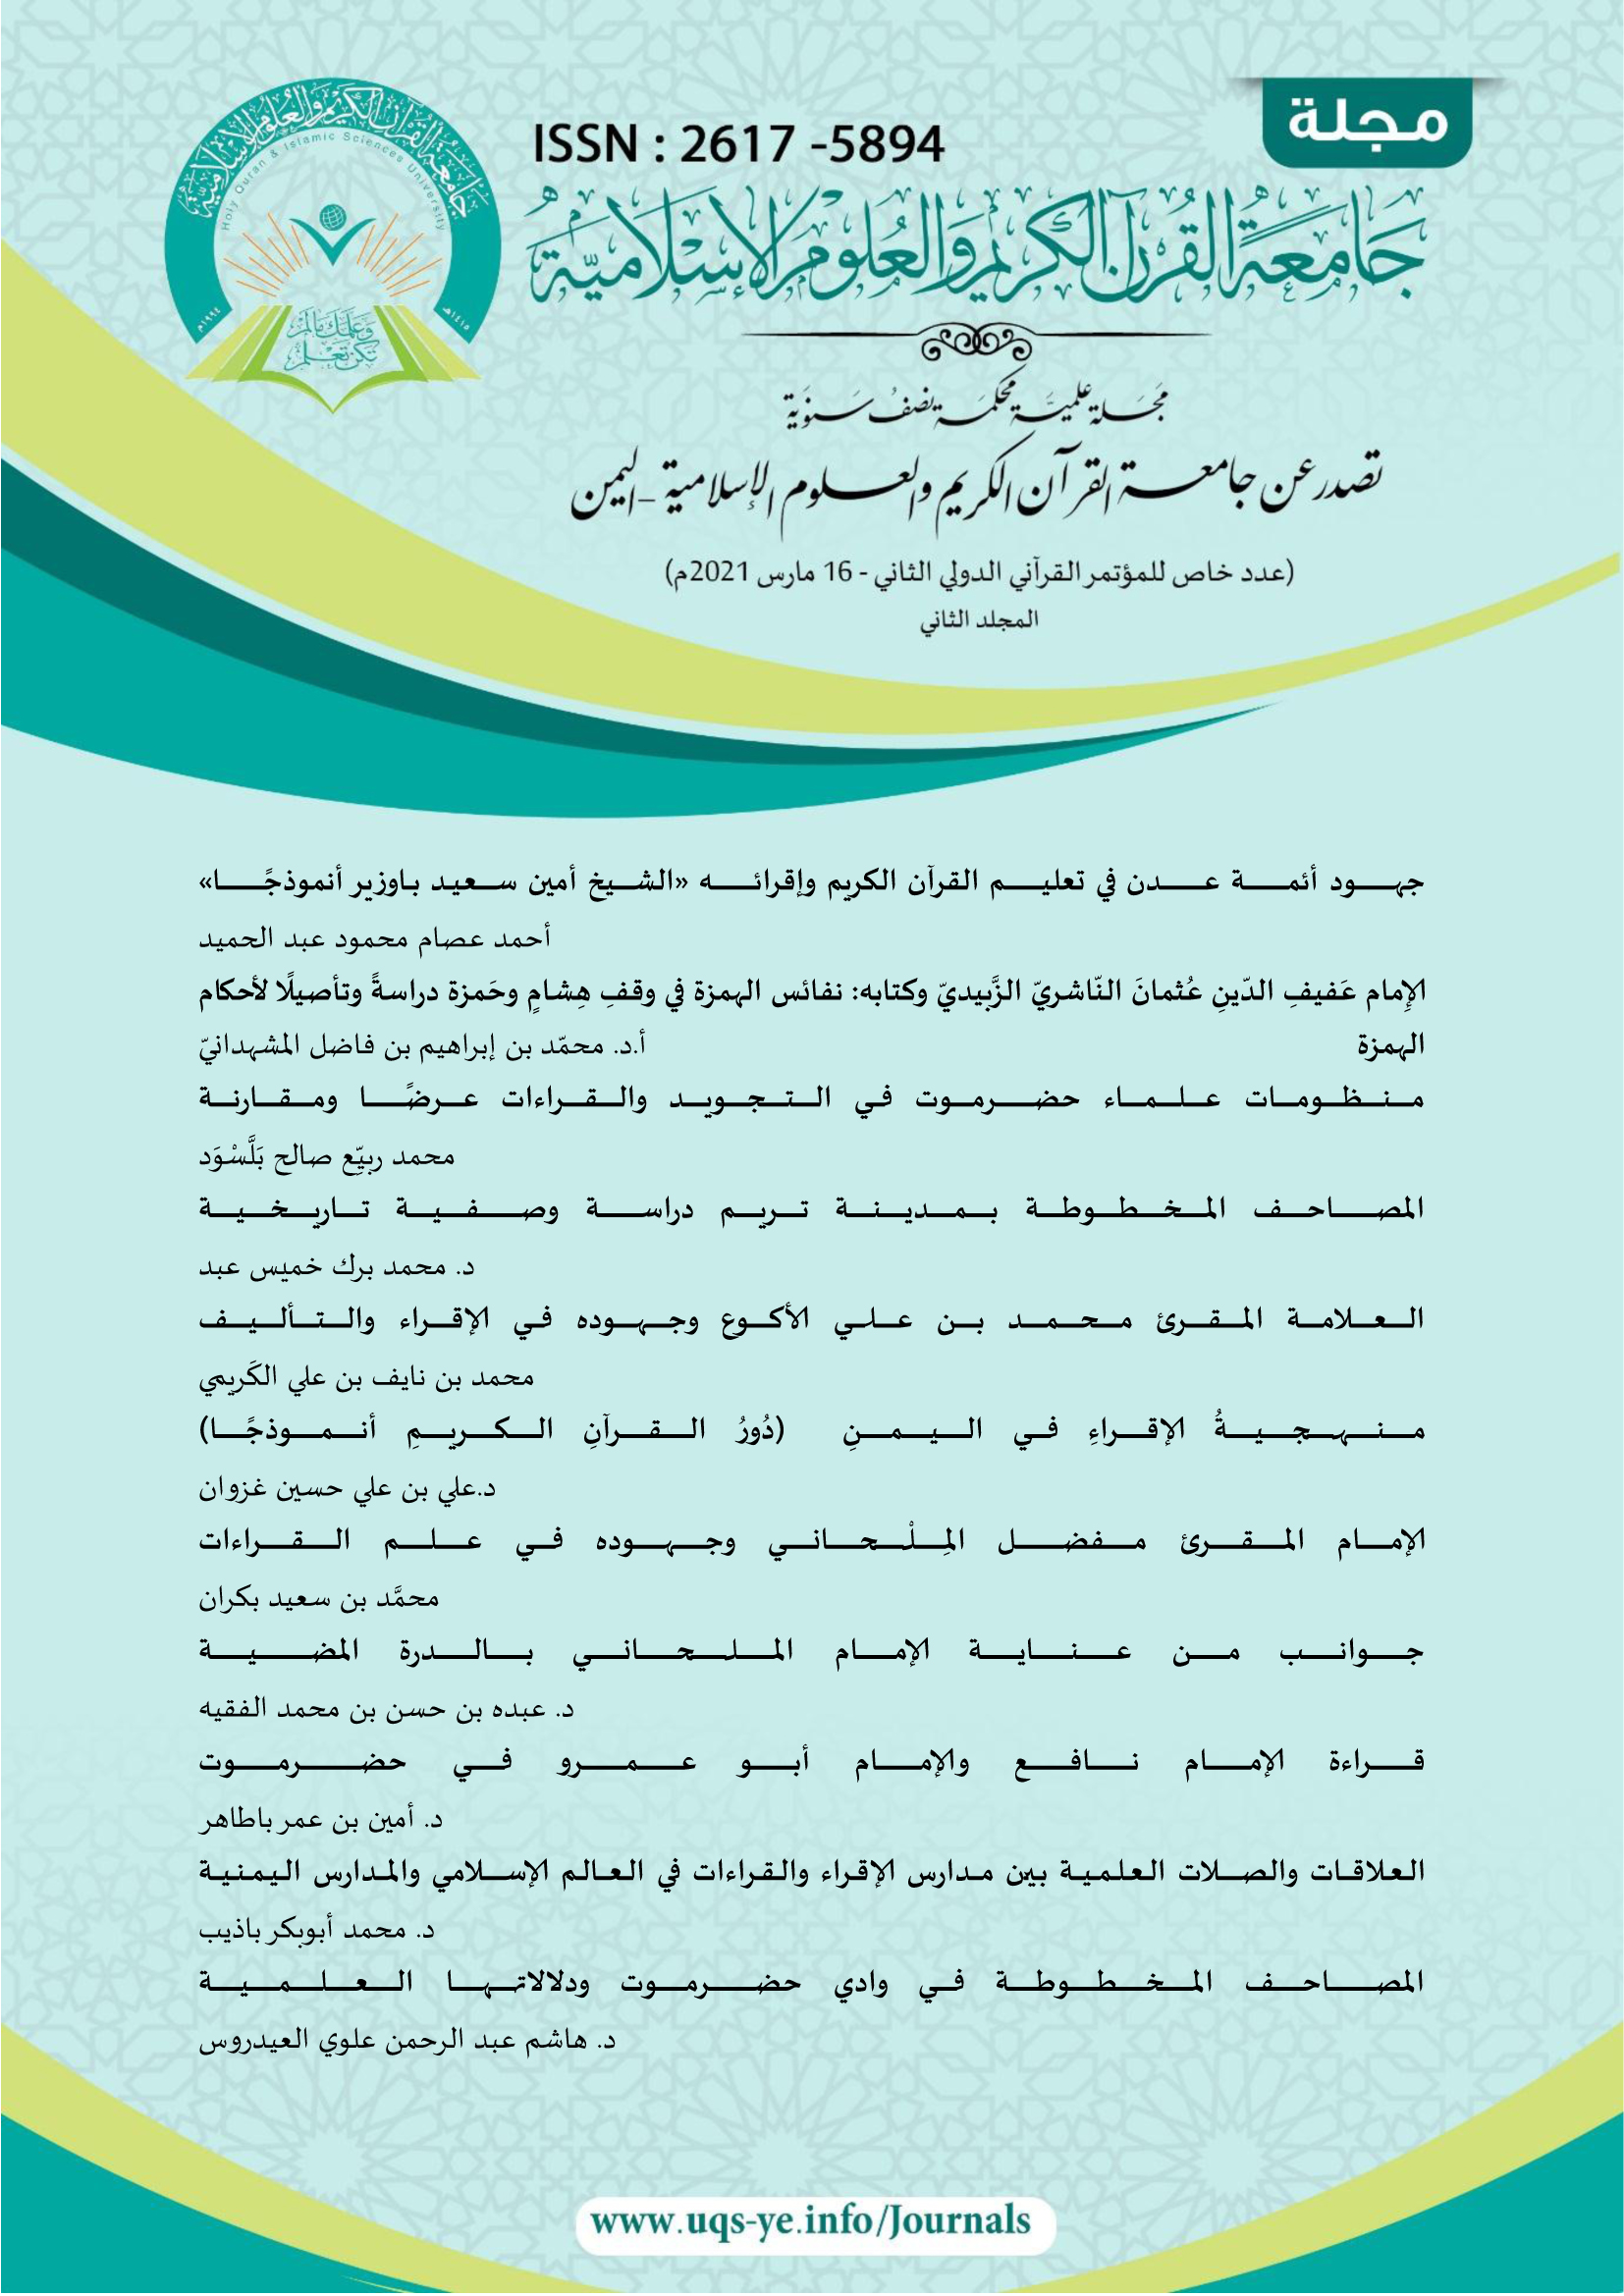 المجلة العلمية - عدد خاص بالمؤتمر القرآني الدولي الثاني _مارس 2021م المجلد الثاني